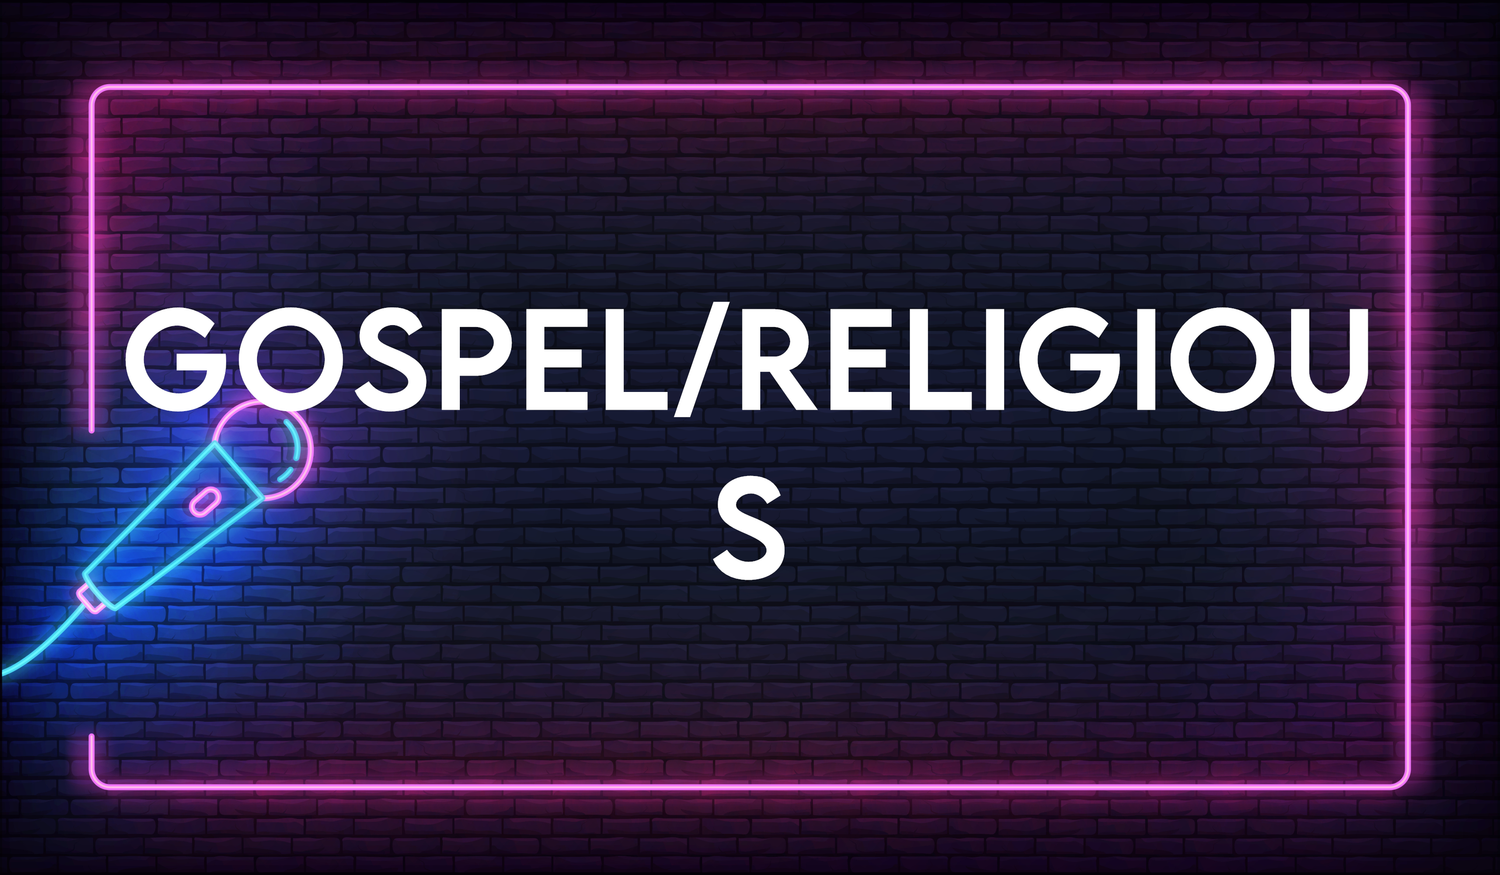 Religious/Gospel